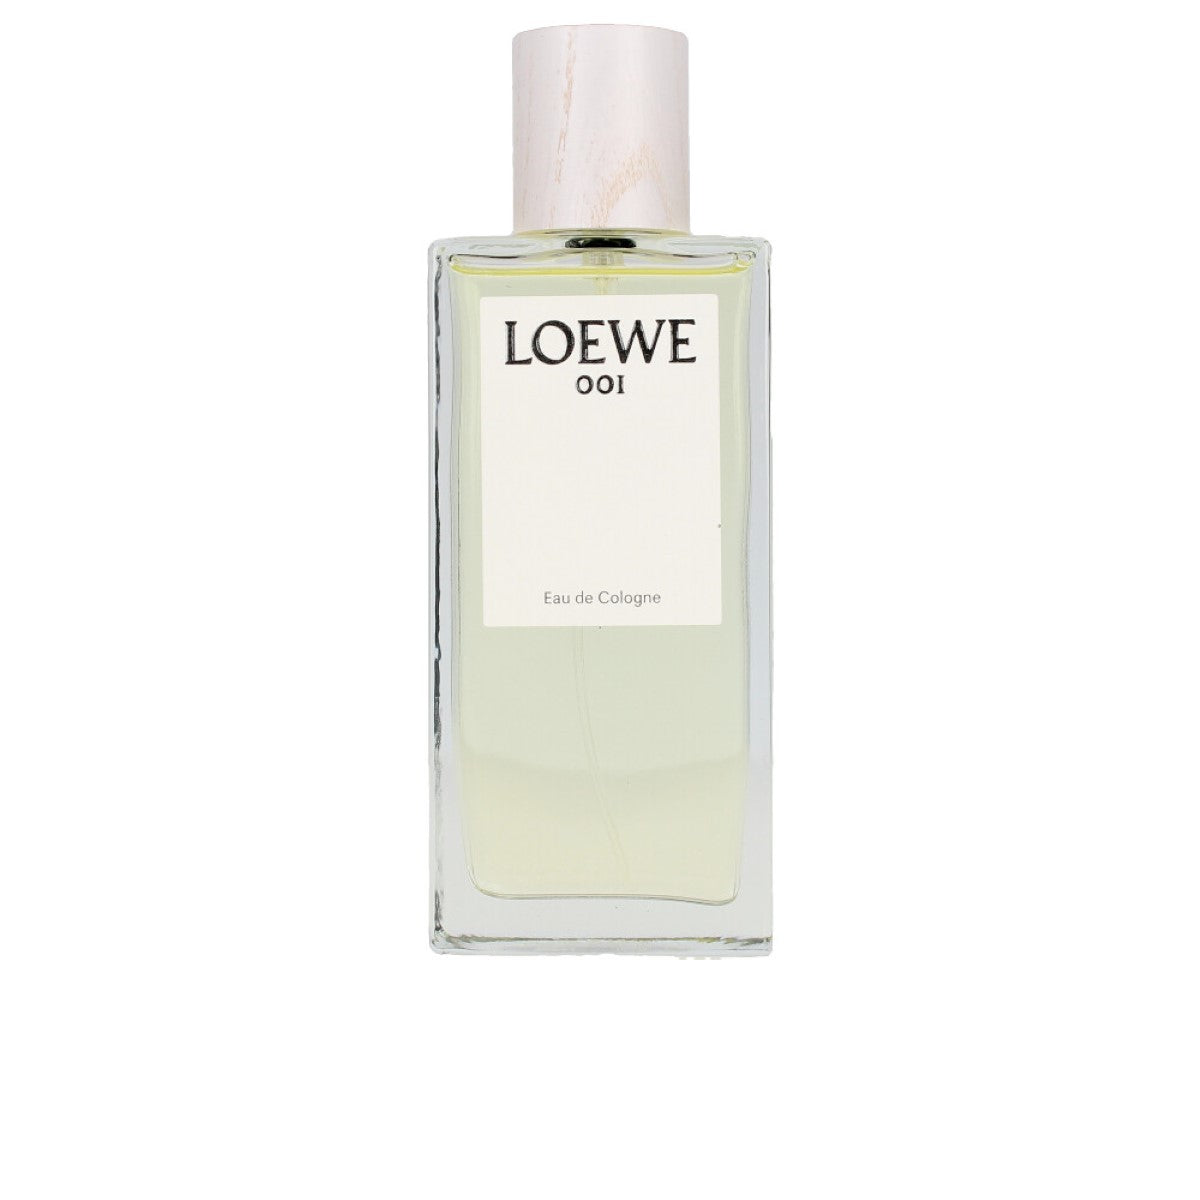 Perfume unisexe Loewe 001 EDC 50 ml 100 ml